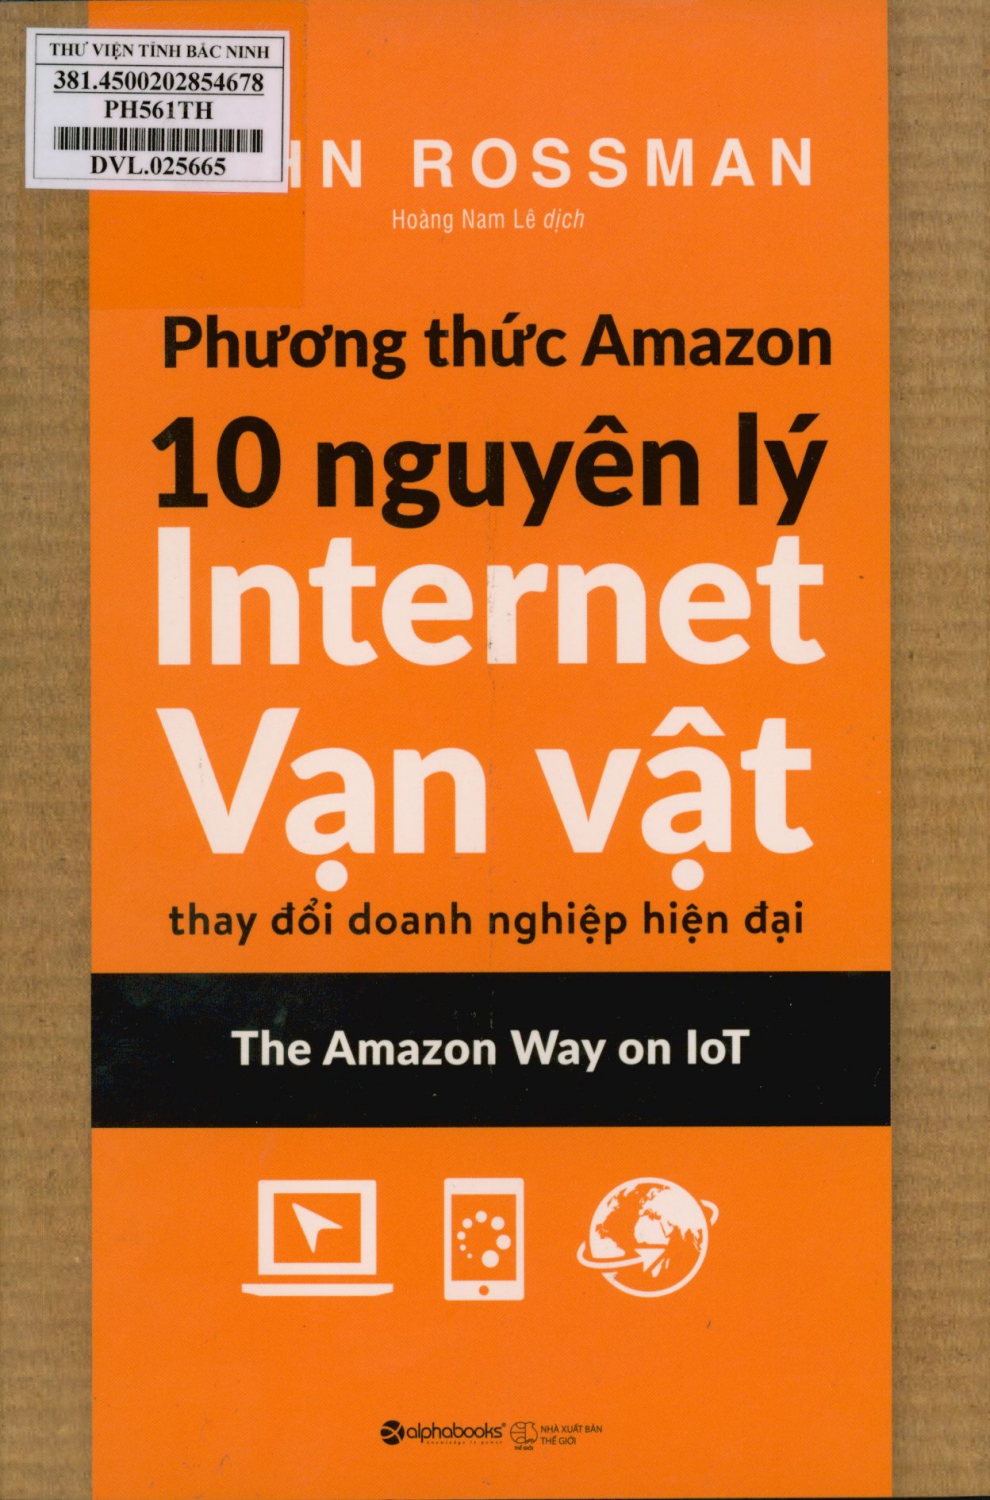 Phương thức Amazon : 10 nguyên tắc Internet vạn vật thay đổi doanh nghiệp hiện đại